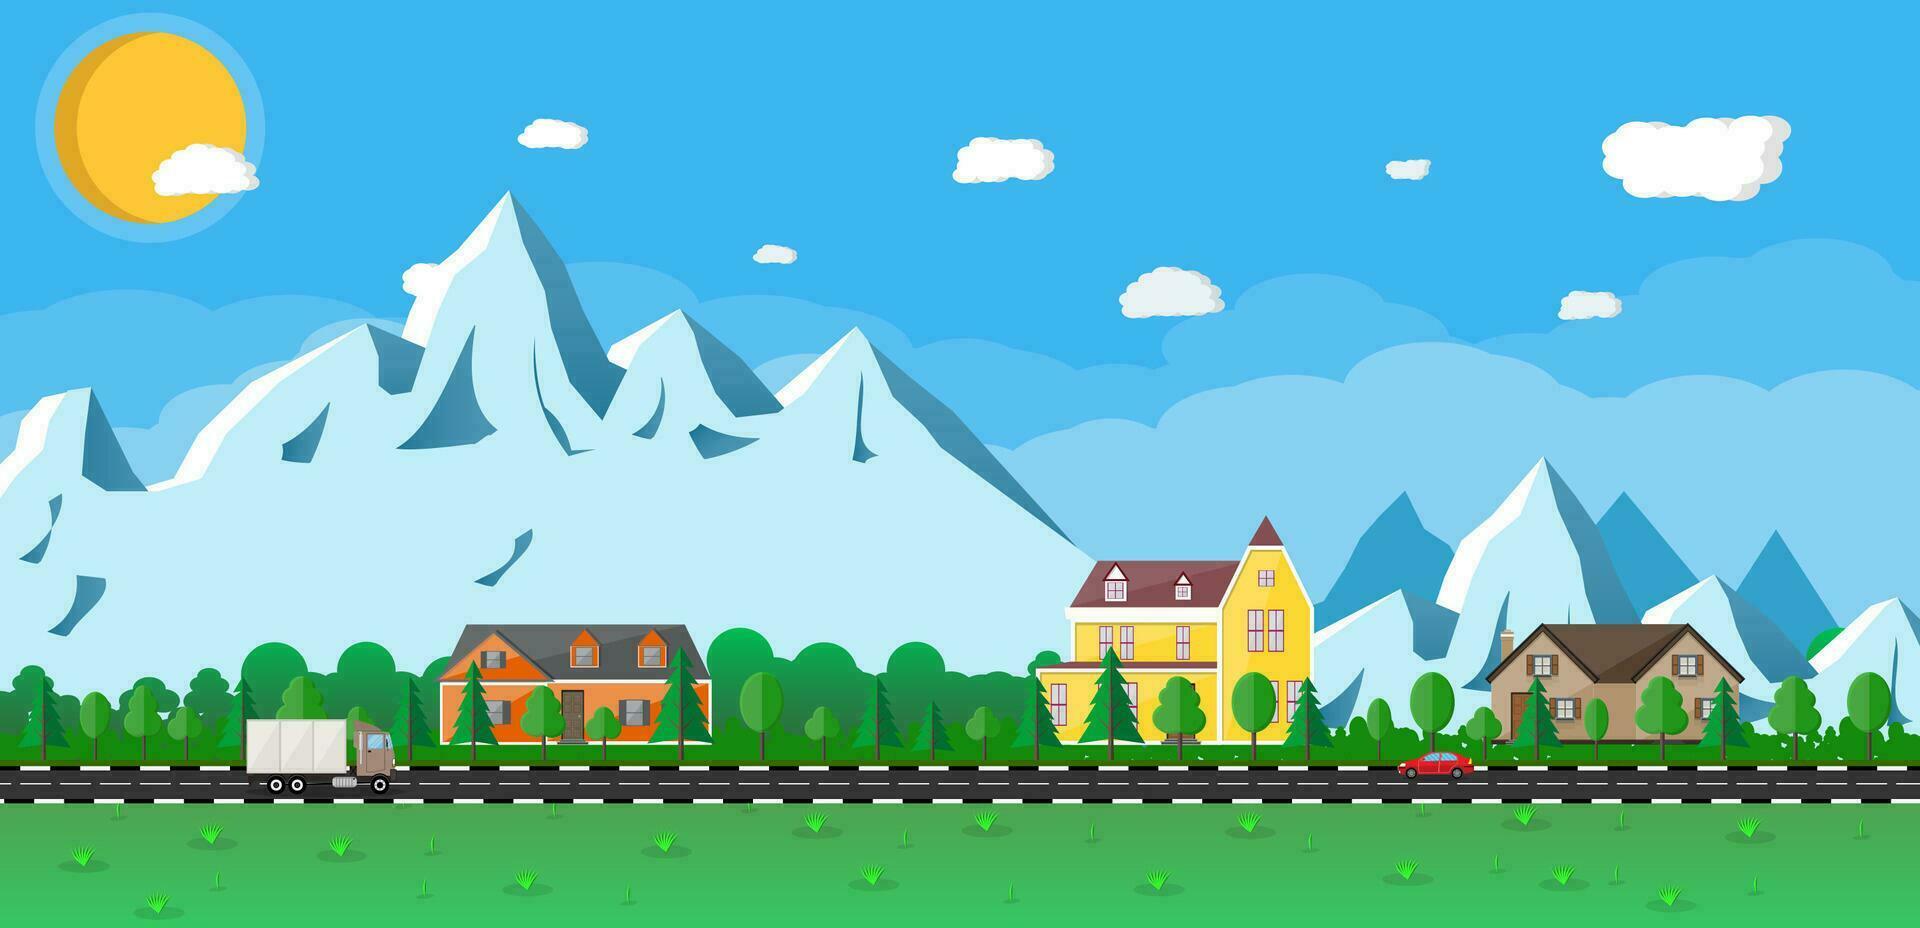 pequeño pueblo paisaje. de madera casas en el montañas entre el arboles la carretera con carros. azul cielo con Dom y nubes vector ilustración en plano tyle